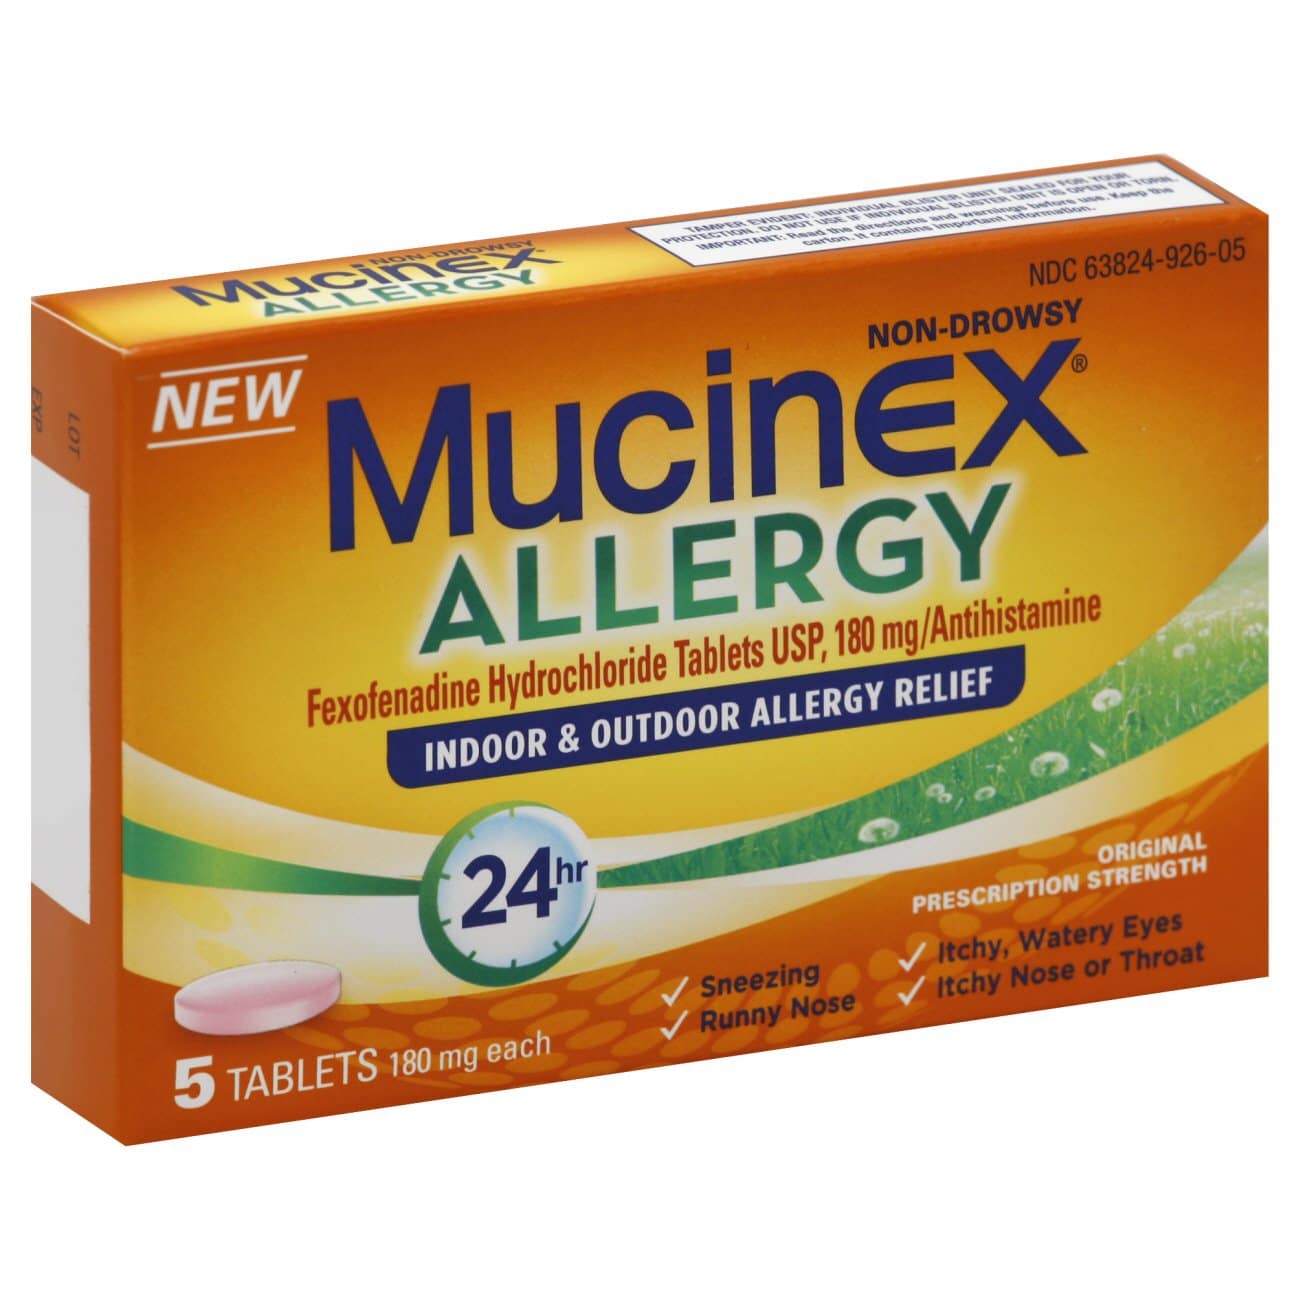 Mucinex Allergy 24 Hour Indoor and Outdoor Allergy Relief Fexofenadine ...